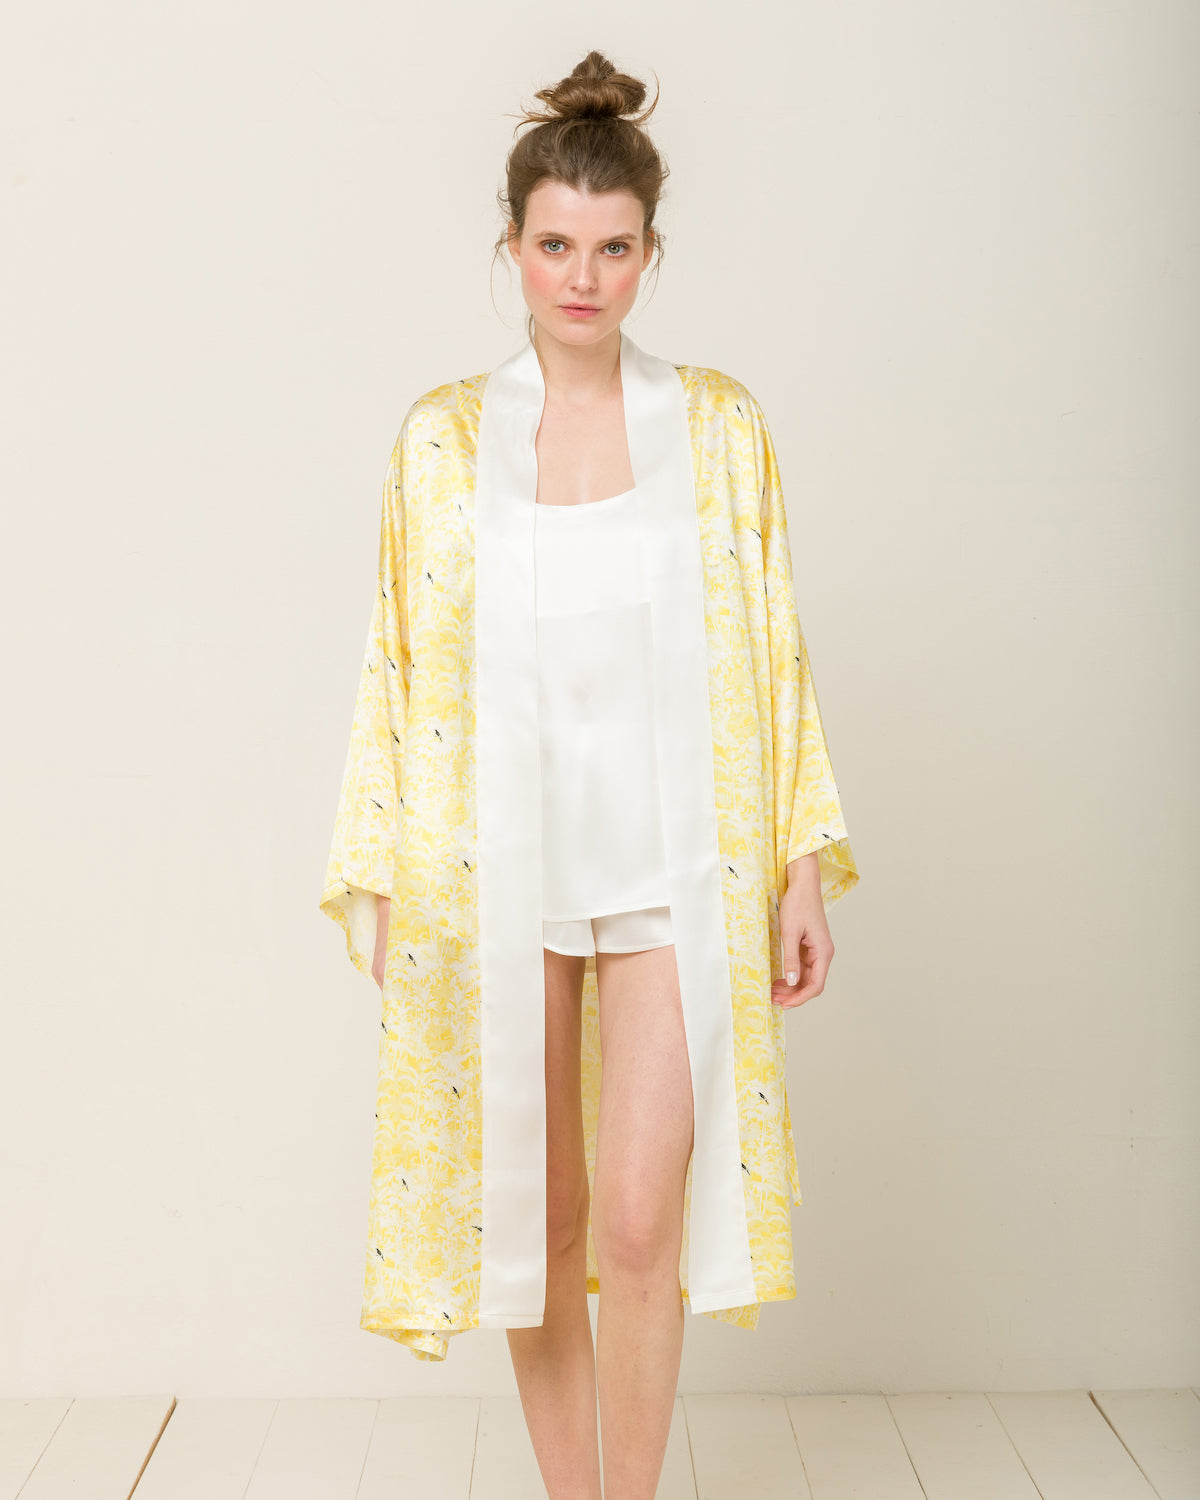 Silk Kimono in Shanghai Garden Loungewear, Pyjama, Seidenpyjama, Schlafanzug | RADICE